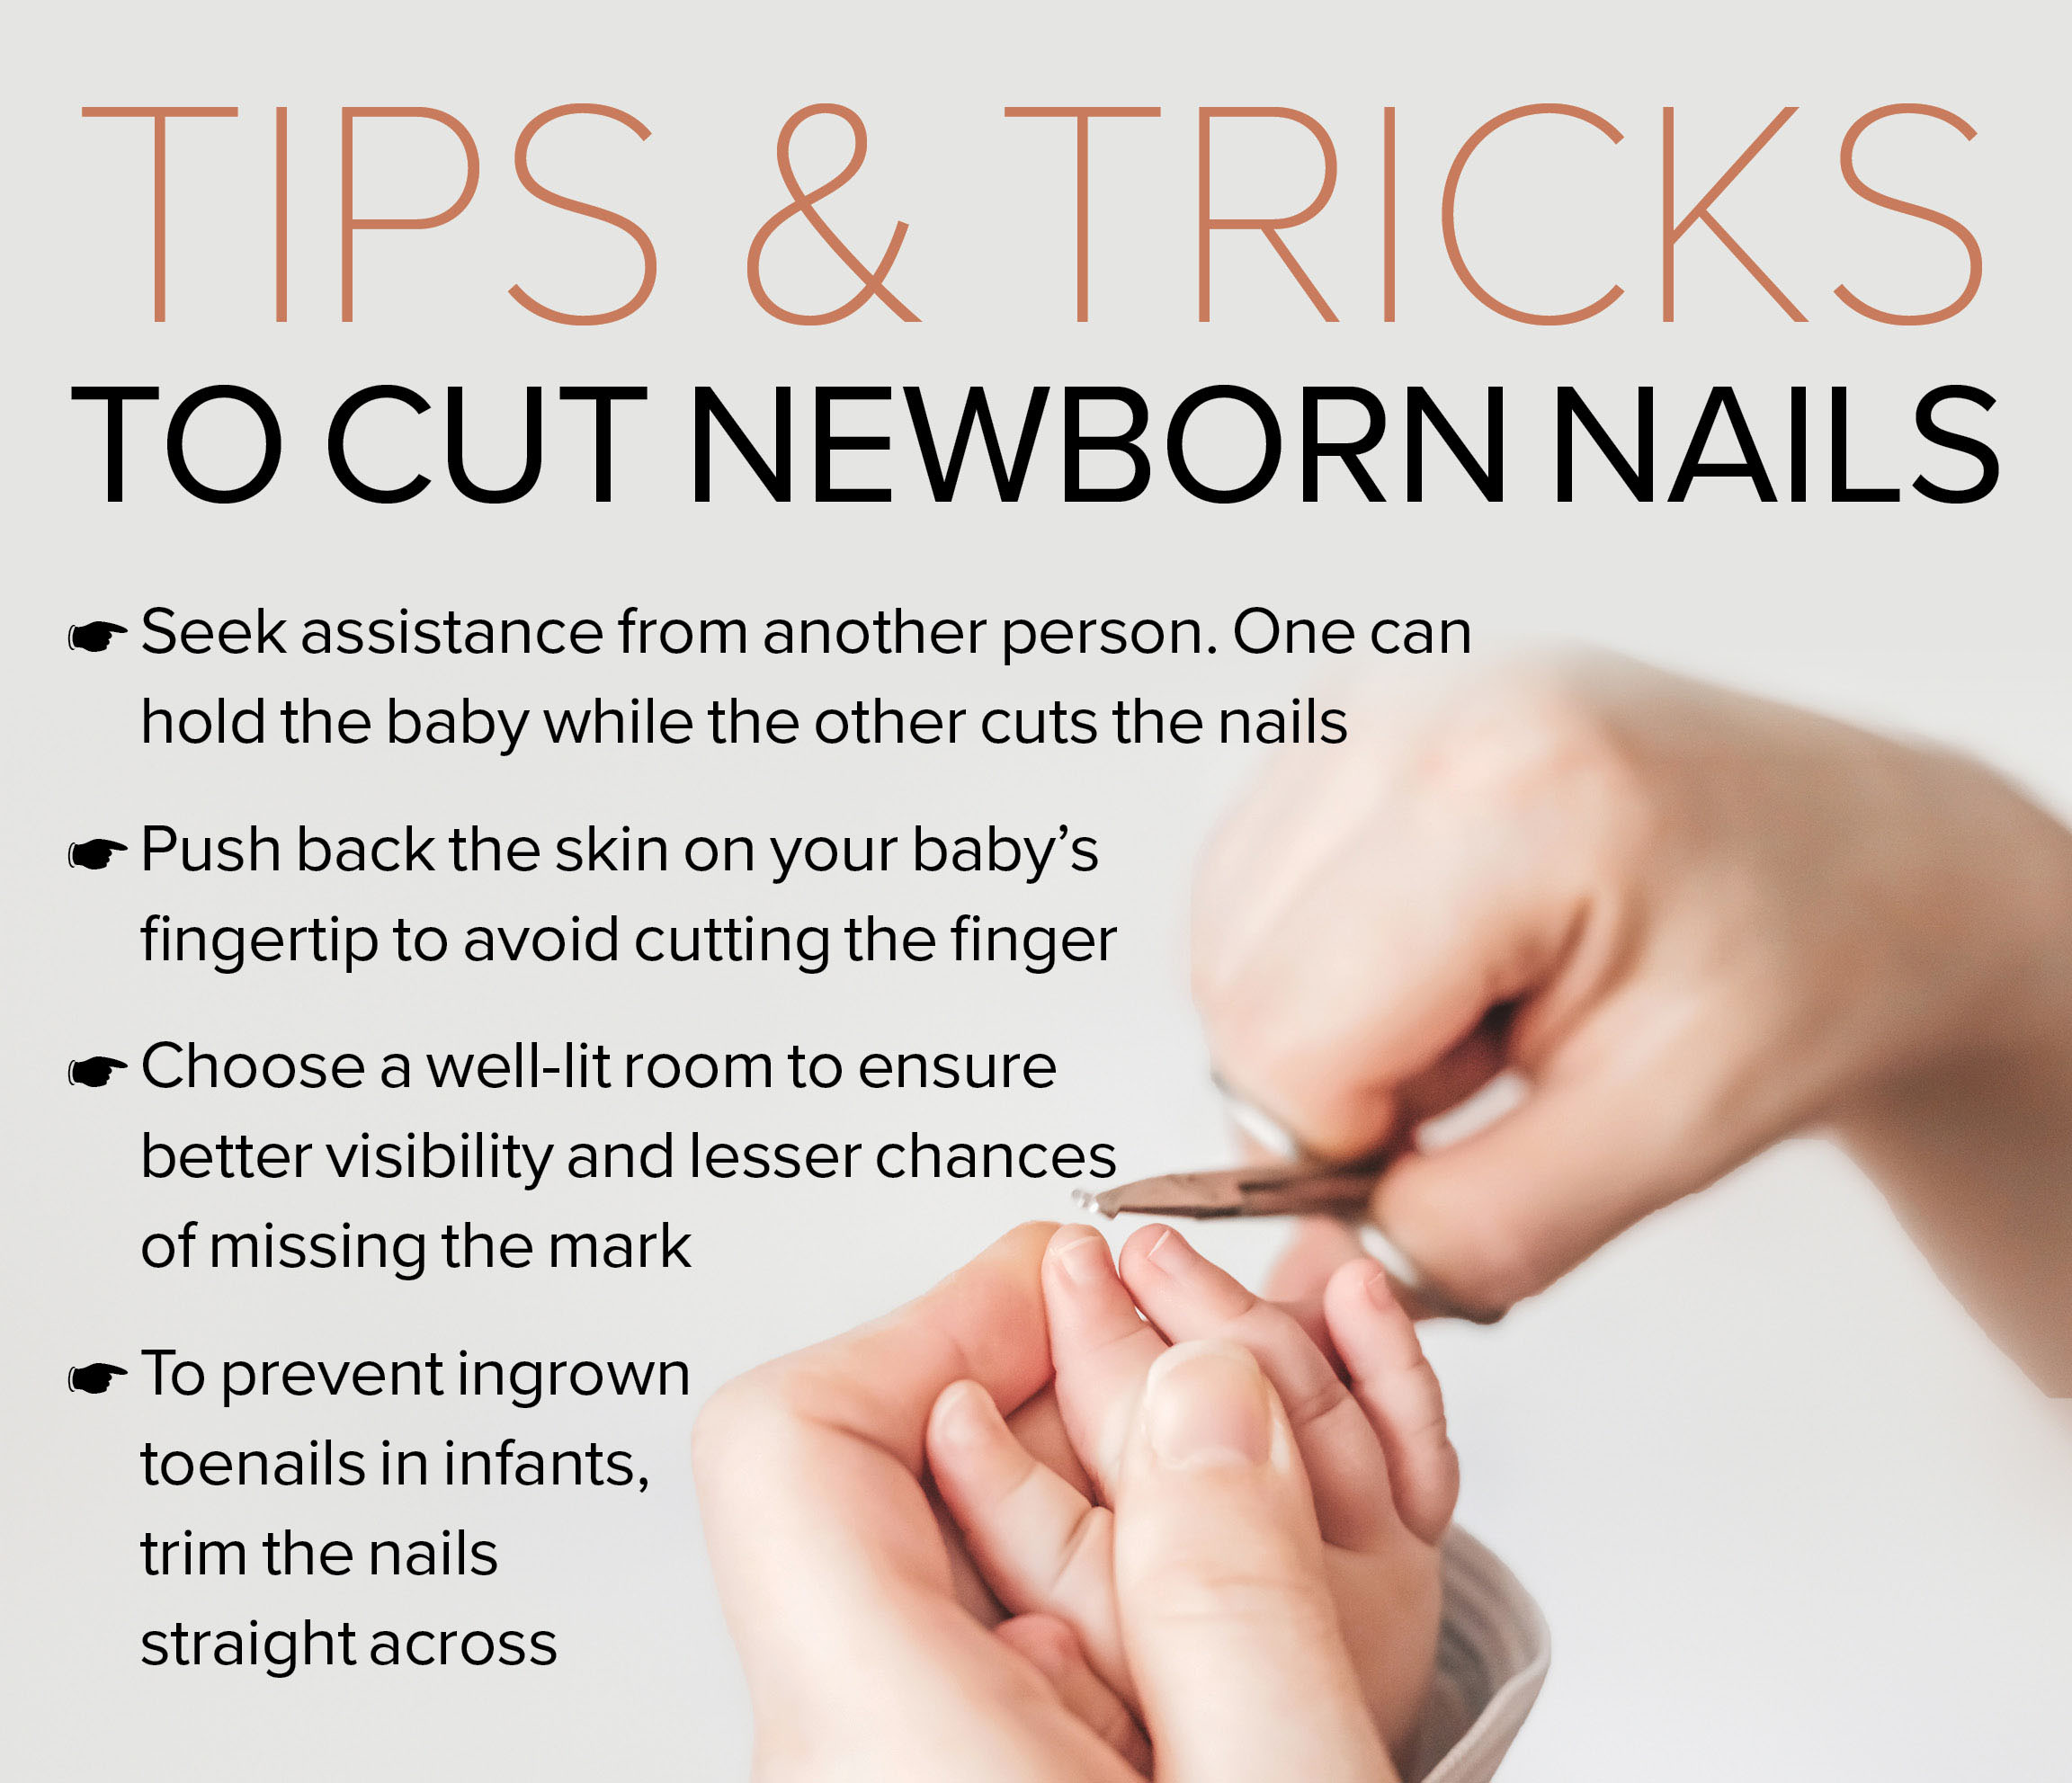 Newborn nail trimming